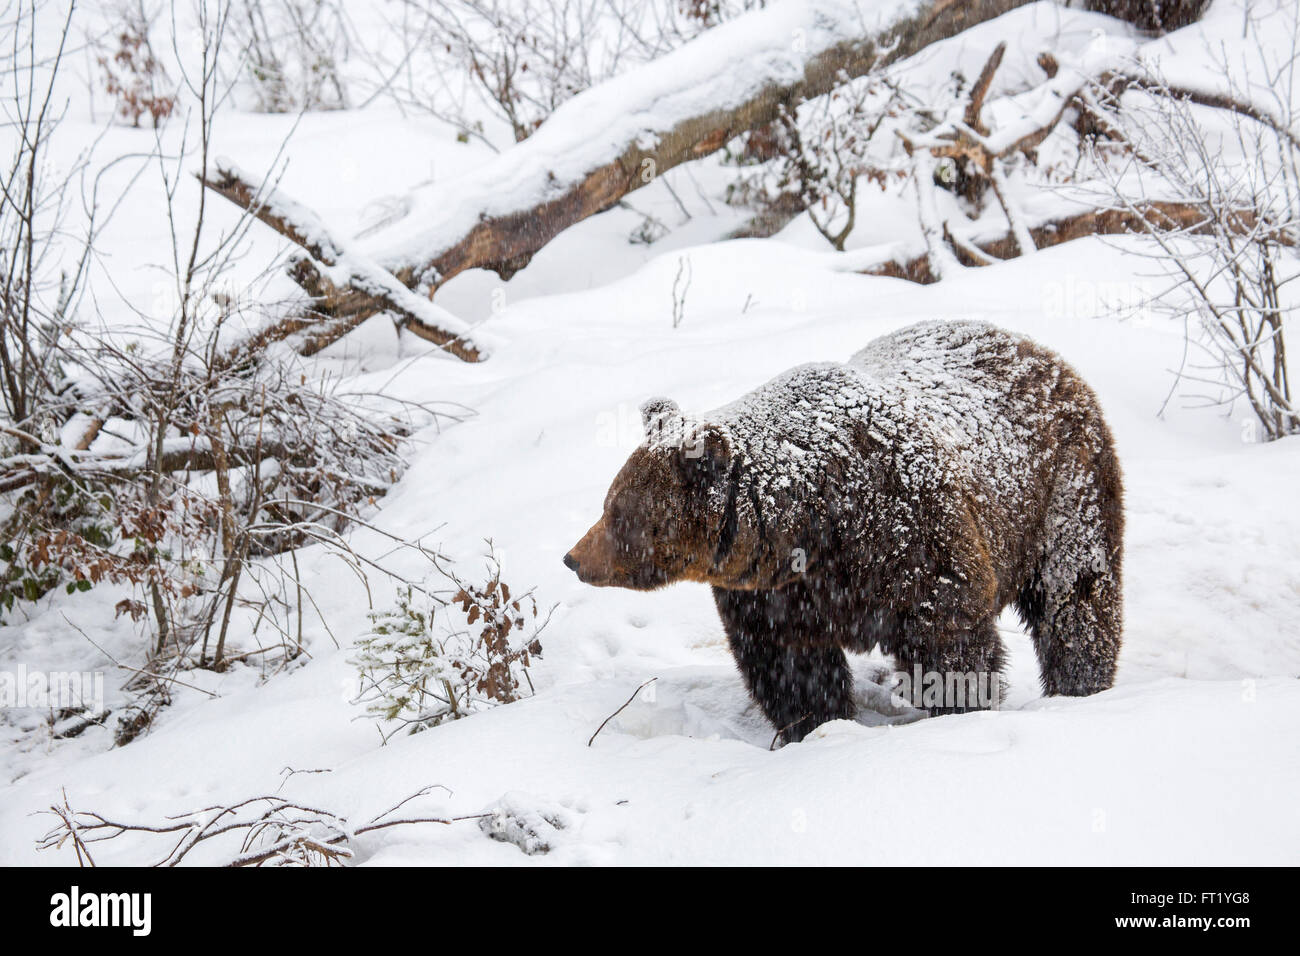 Oso pardo (Ursus arctos) caminando en el bosque durante la lluvia de nieve en invierno / otoño / primavera Foto de stock